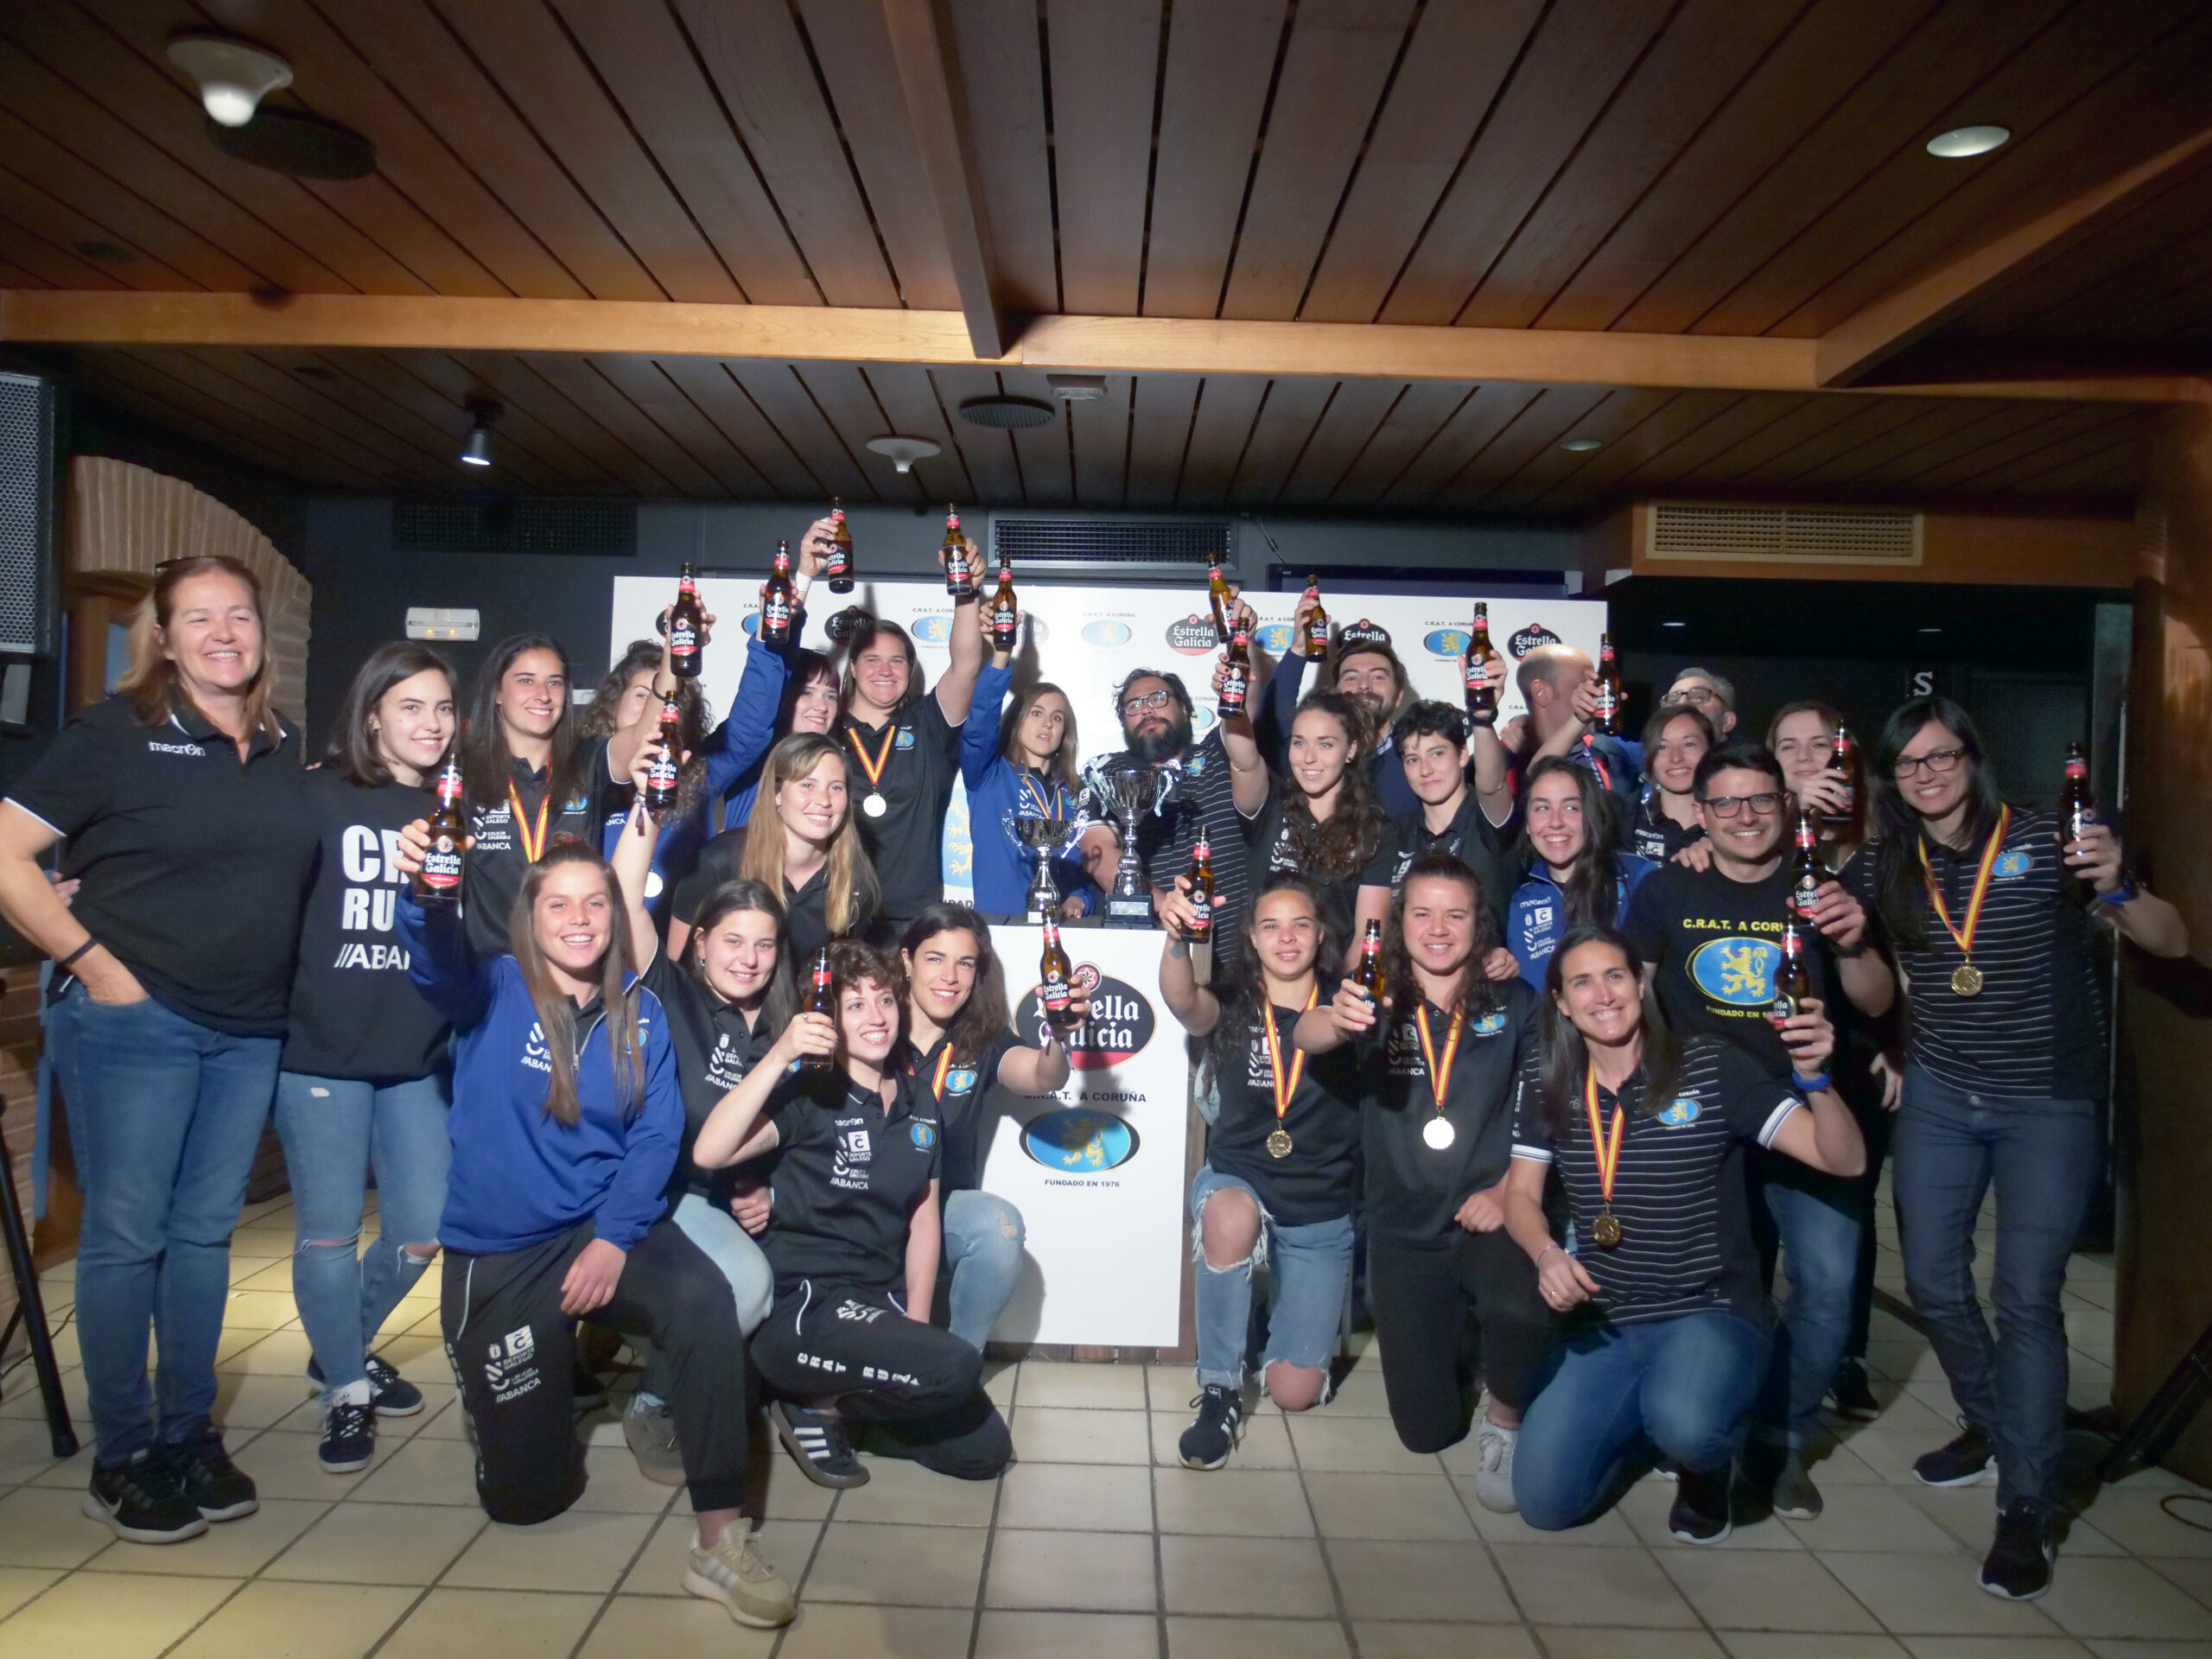 CRAT celebra título de Liga con Estrella Galicia